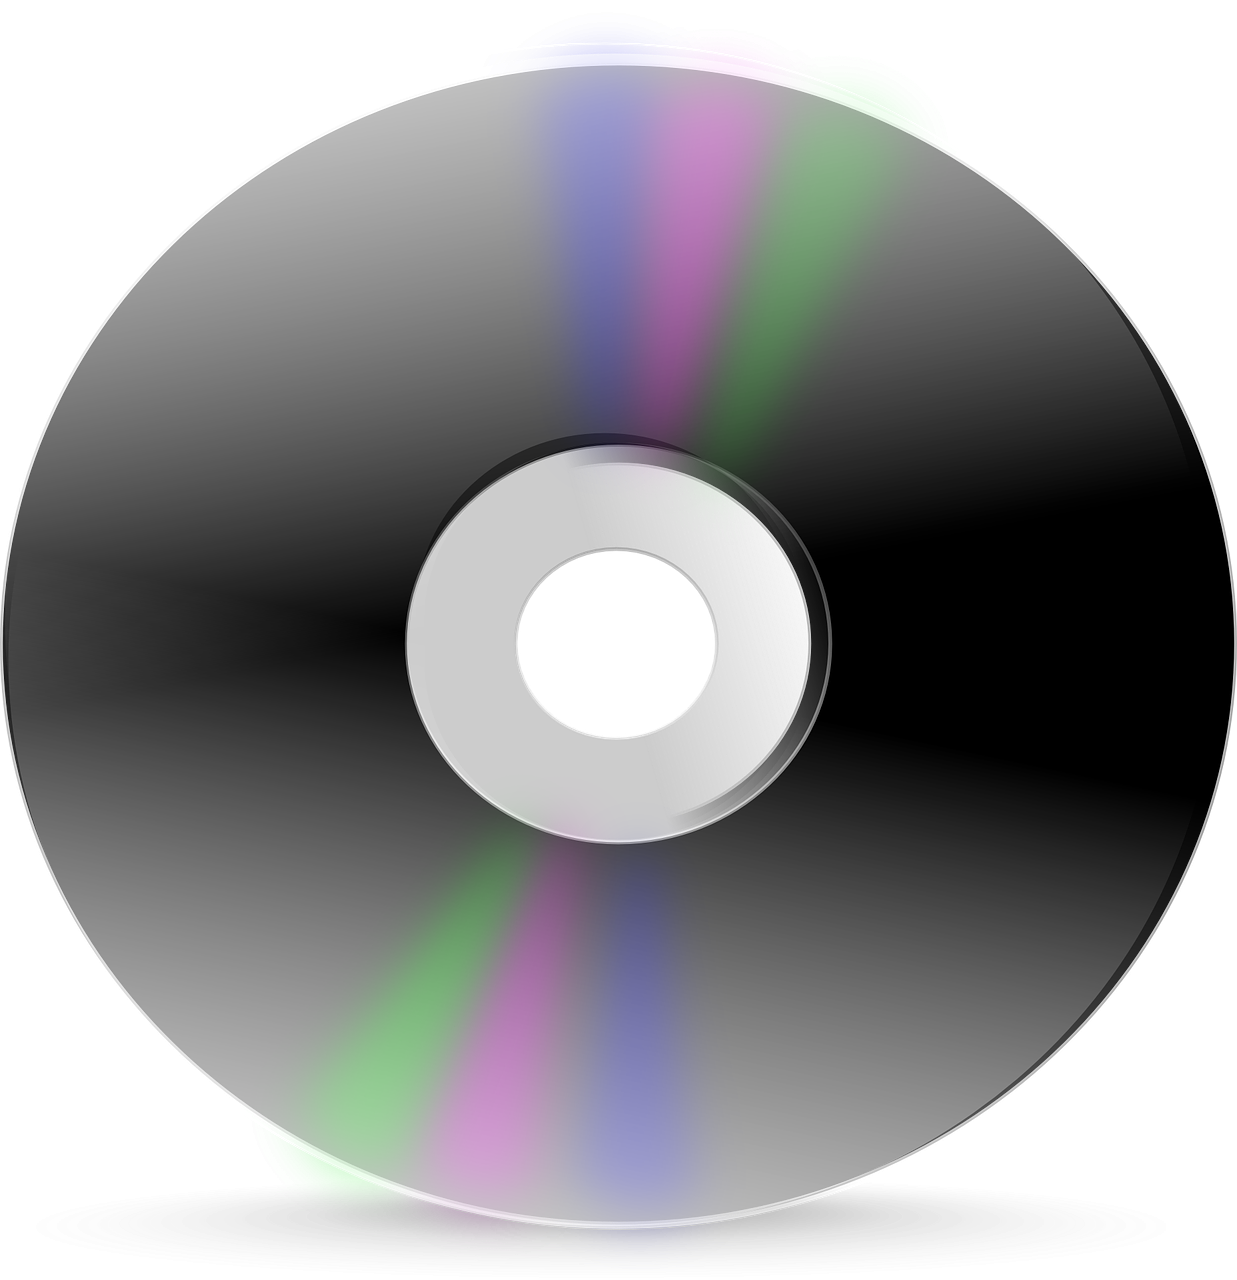 Cd user. CD DVD диски. Компакт диск. Компьютерный диск. Оптический диск.